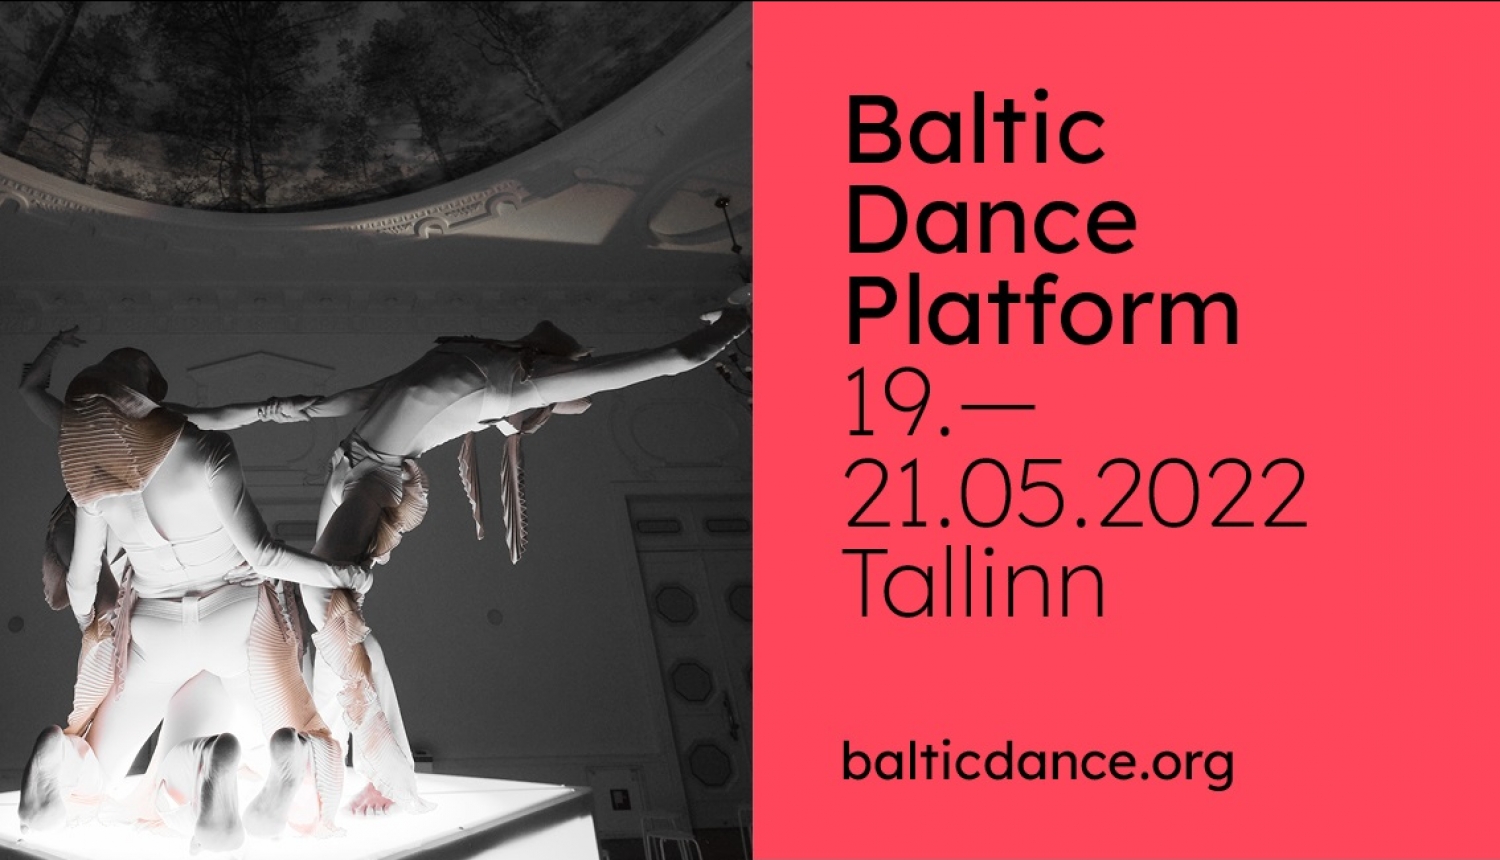 Baltijas Dejas platformas vizuālais materiāls